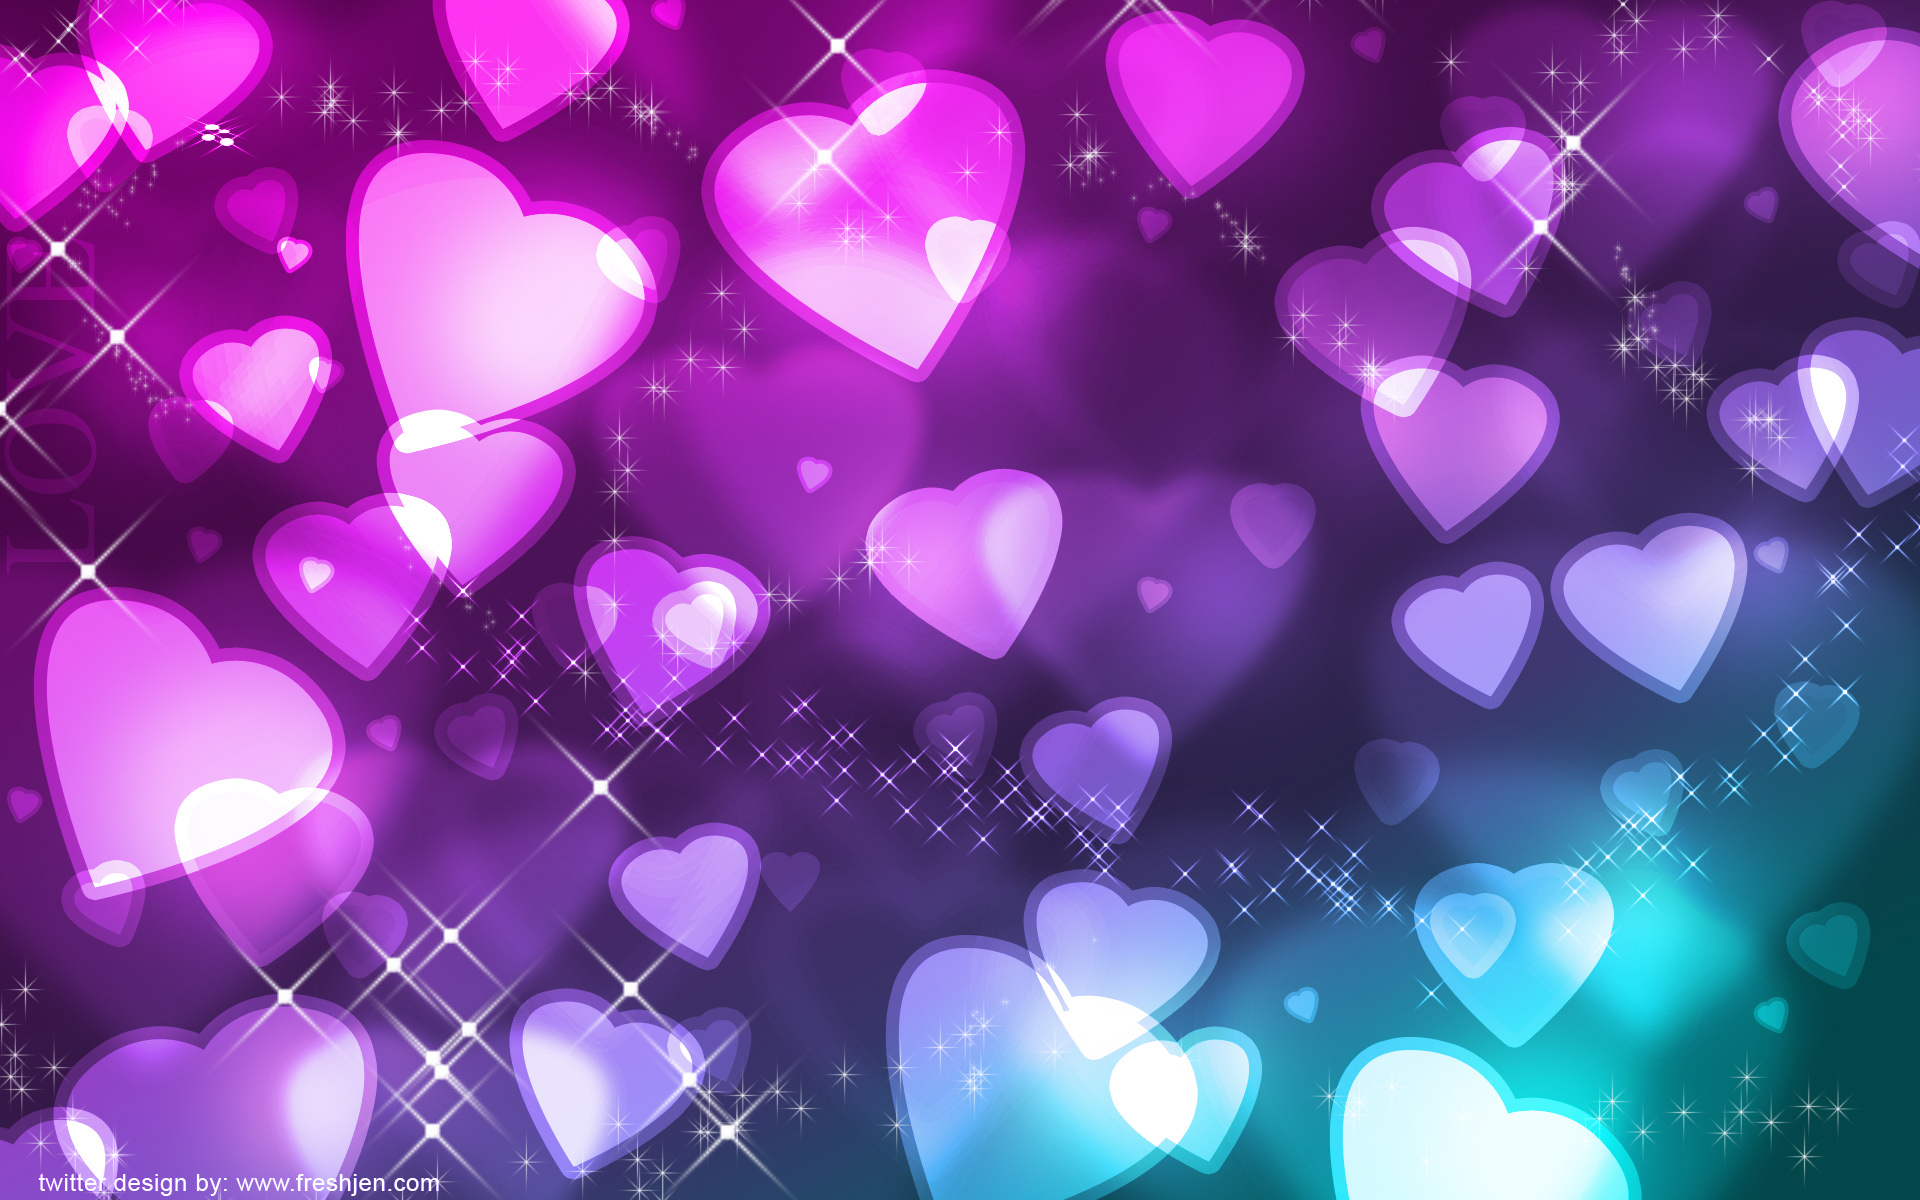 Twitter Background Backgrounds Heart Hearts Freshjen HD wallpapers